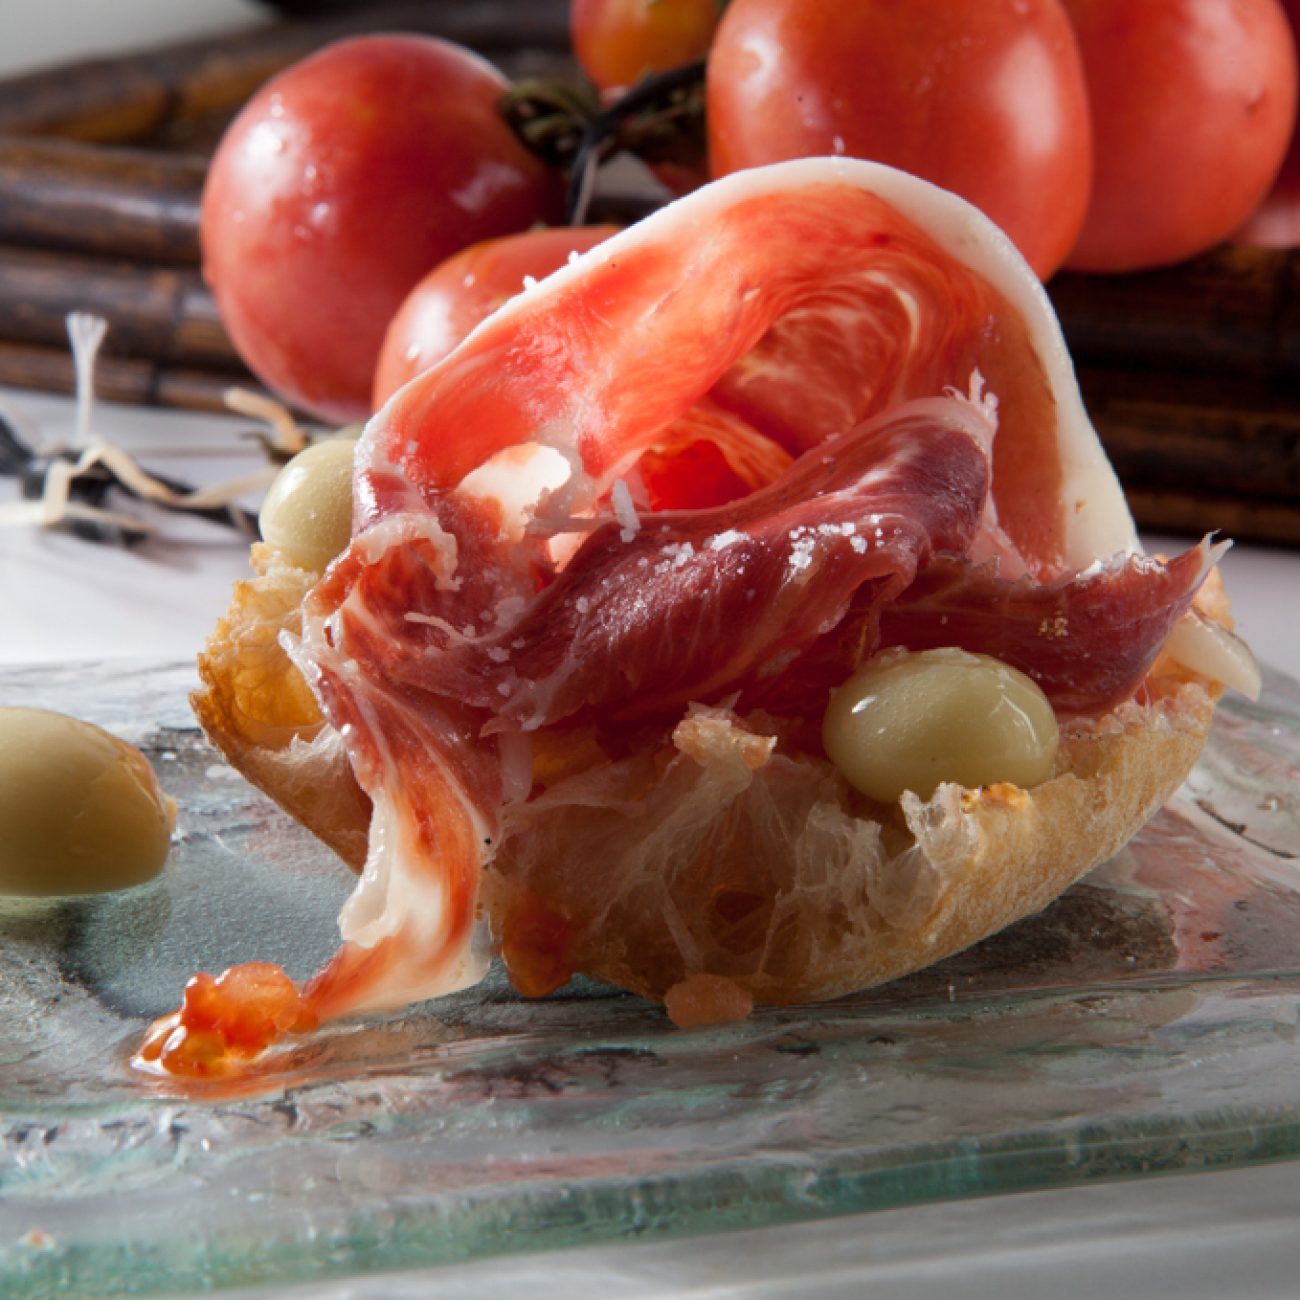 Pan con tomate de “Penjar” jamón ibérico y aceitunas esféricas